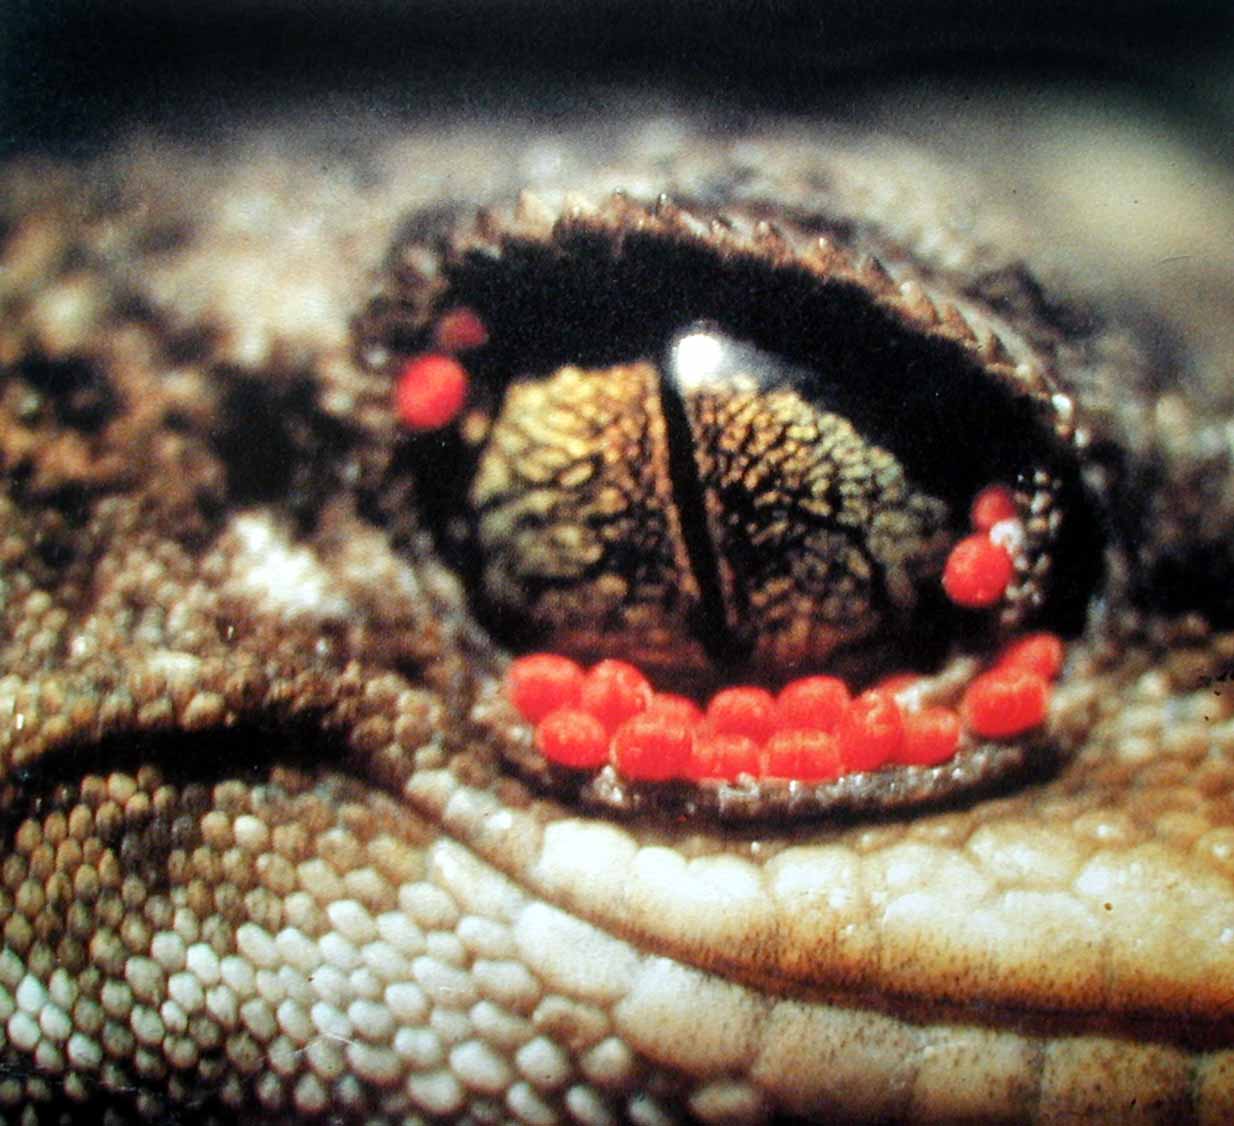 Blood-sucking mites (Geckobia hoplodactyli) on Duvaucel's gecko.